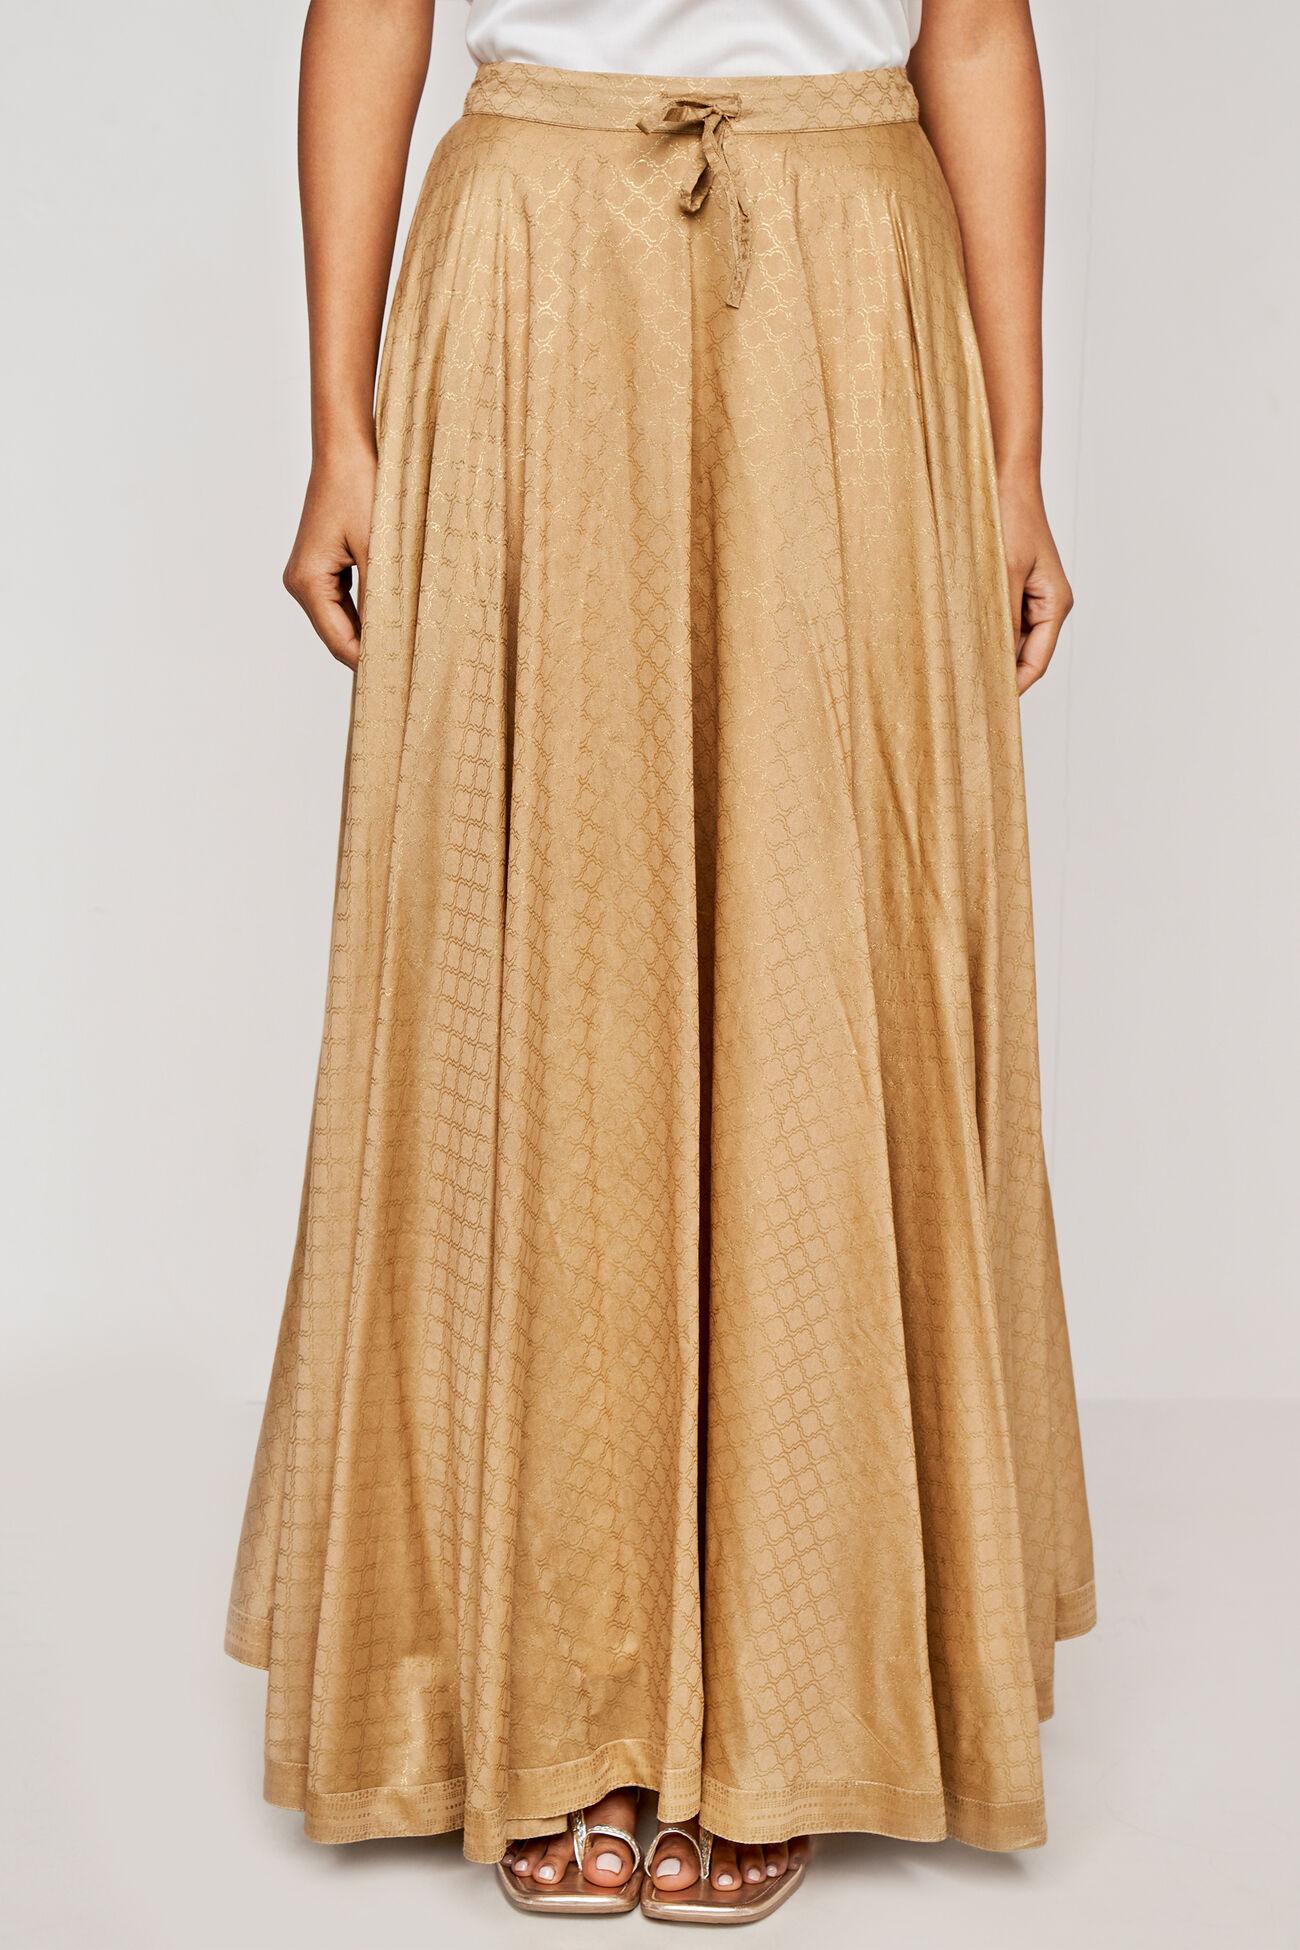 gold foil print straight slip-on skirt